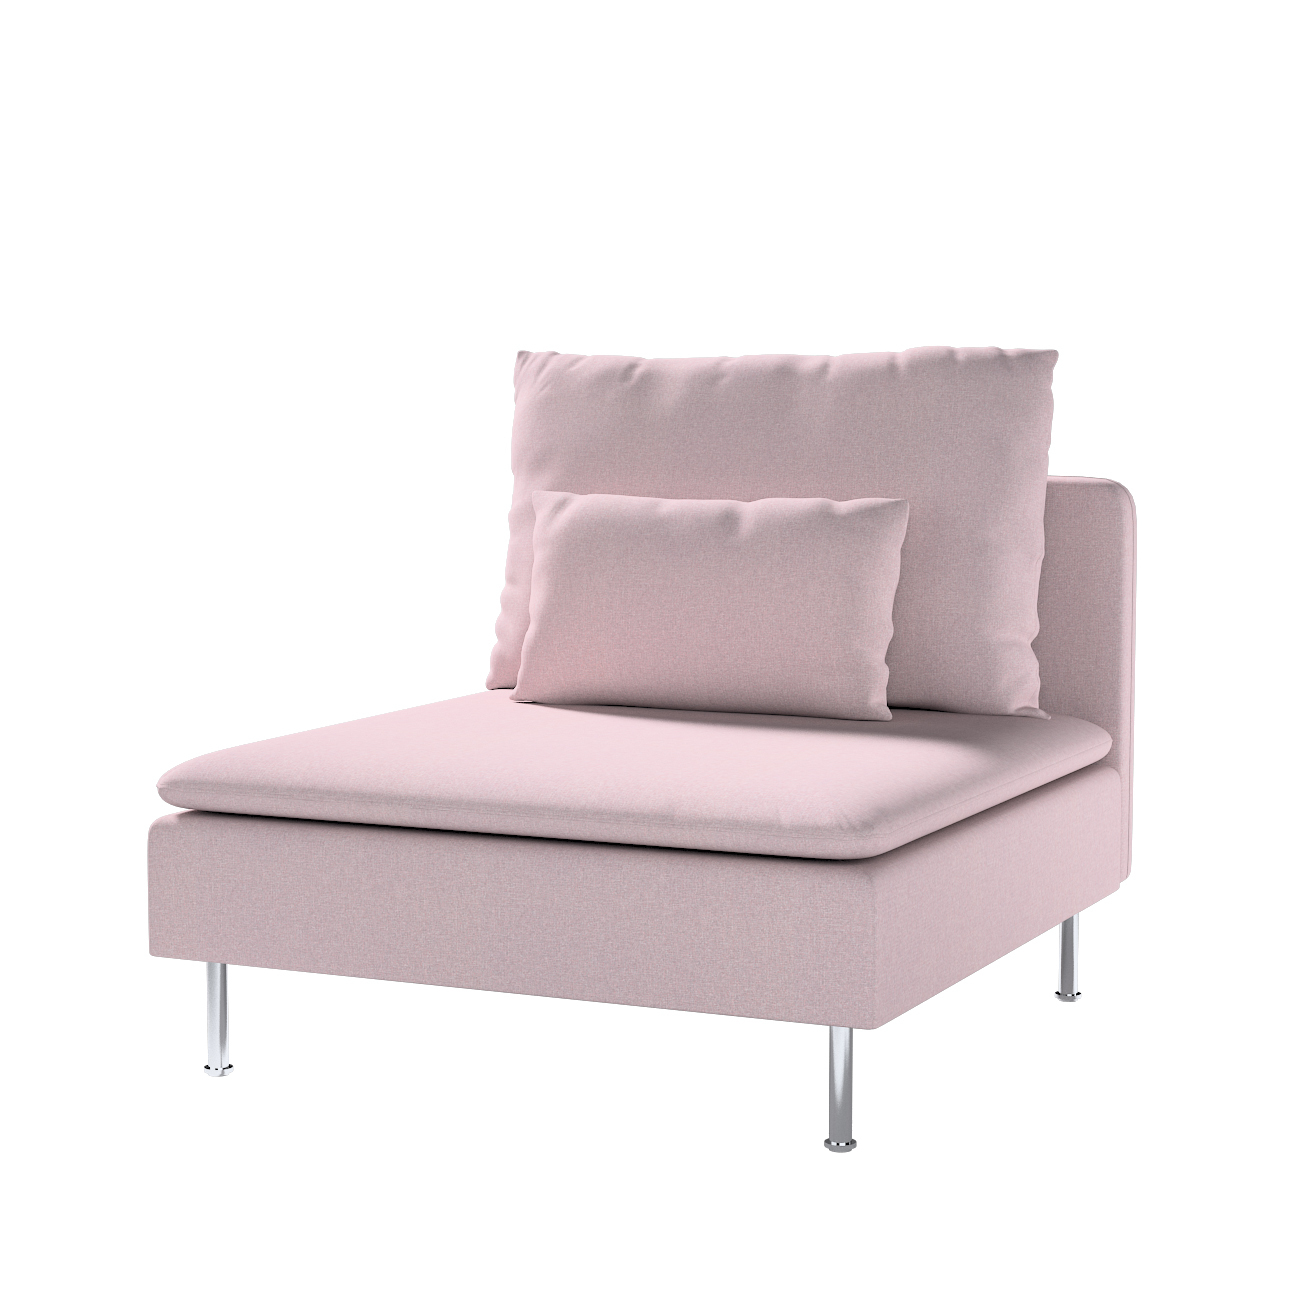 Bezug für Söderhamn Sitzelement 1, rosa, Bezug für Sitzelement 1, Amsterdam günstig online kaufen